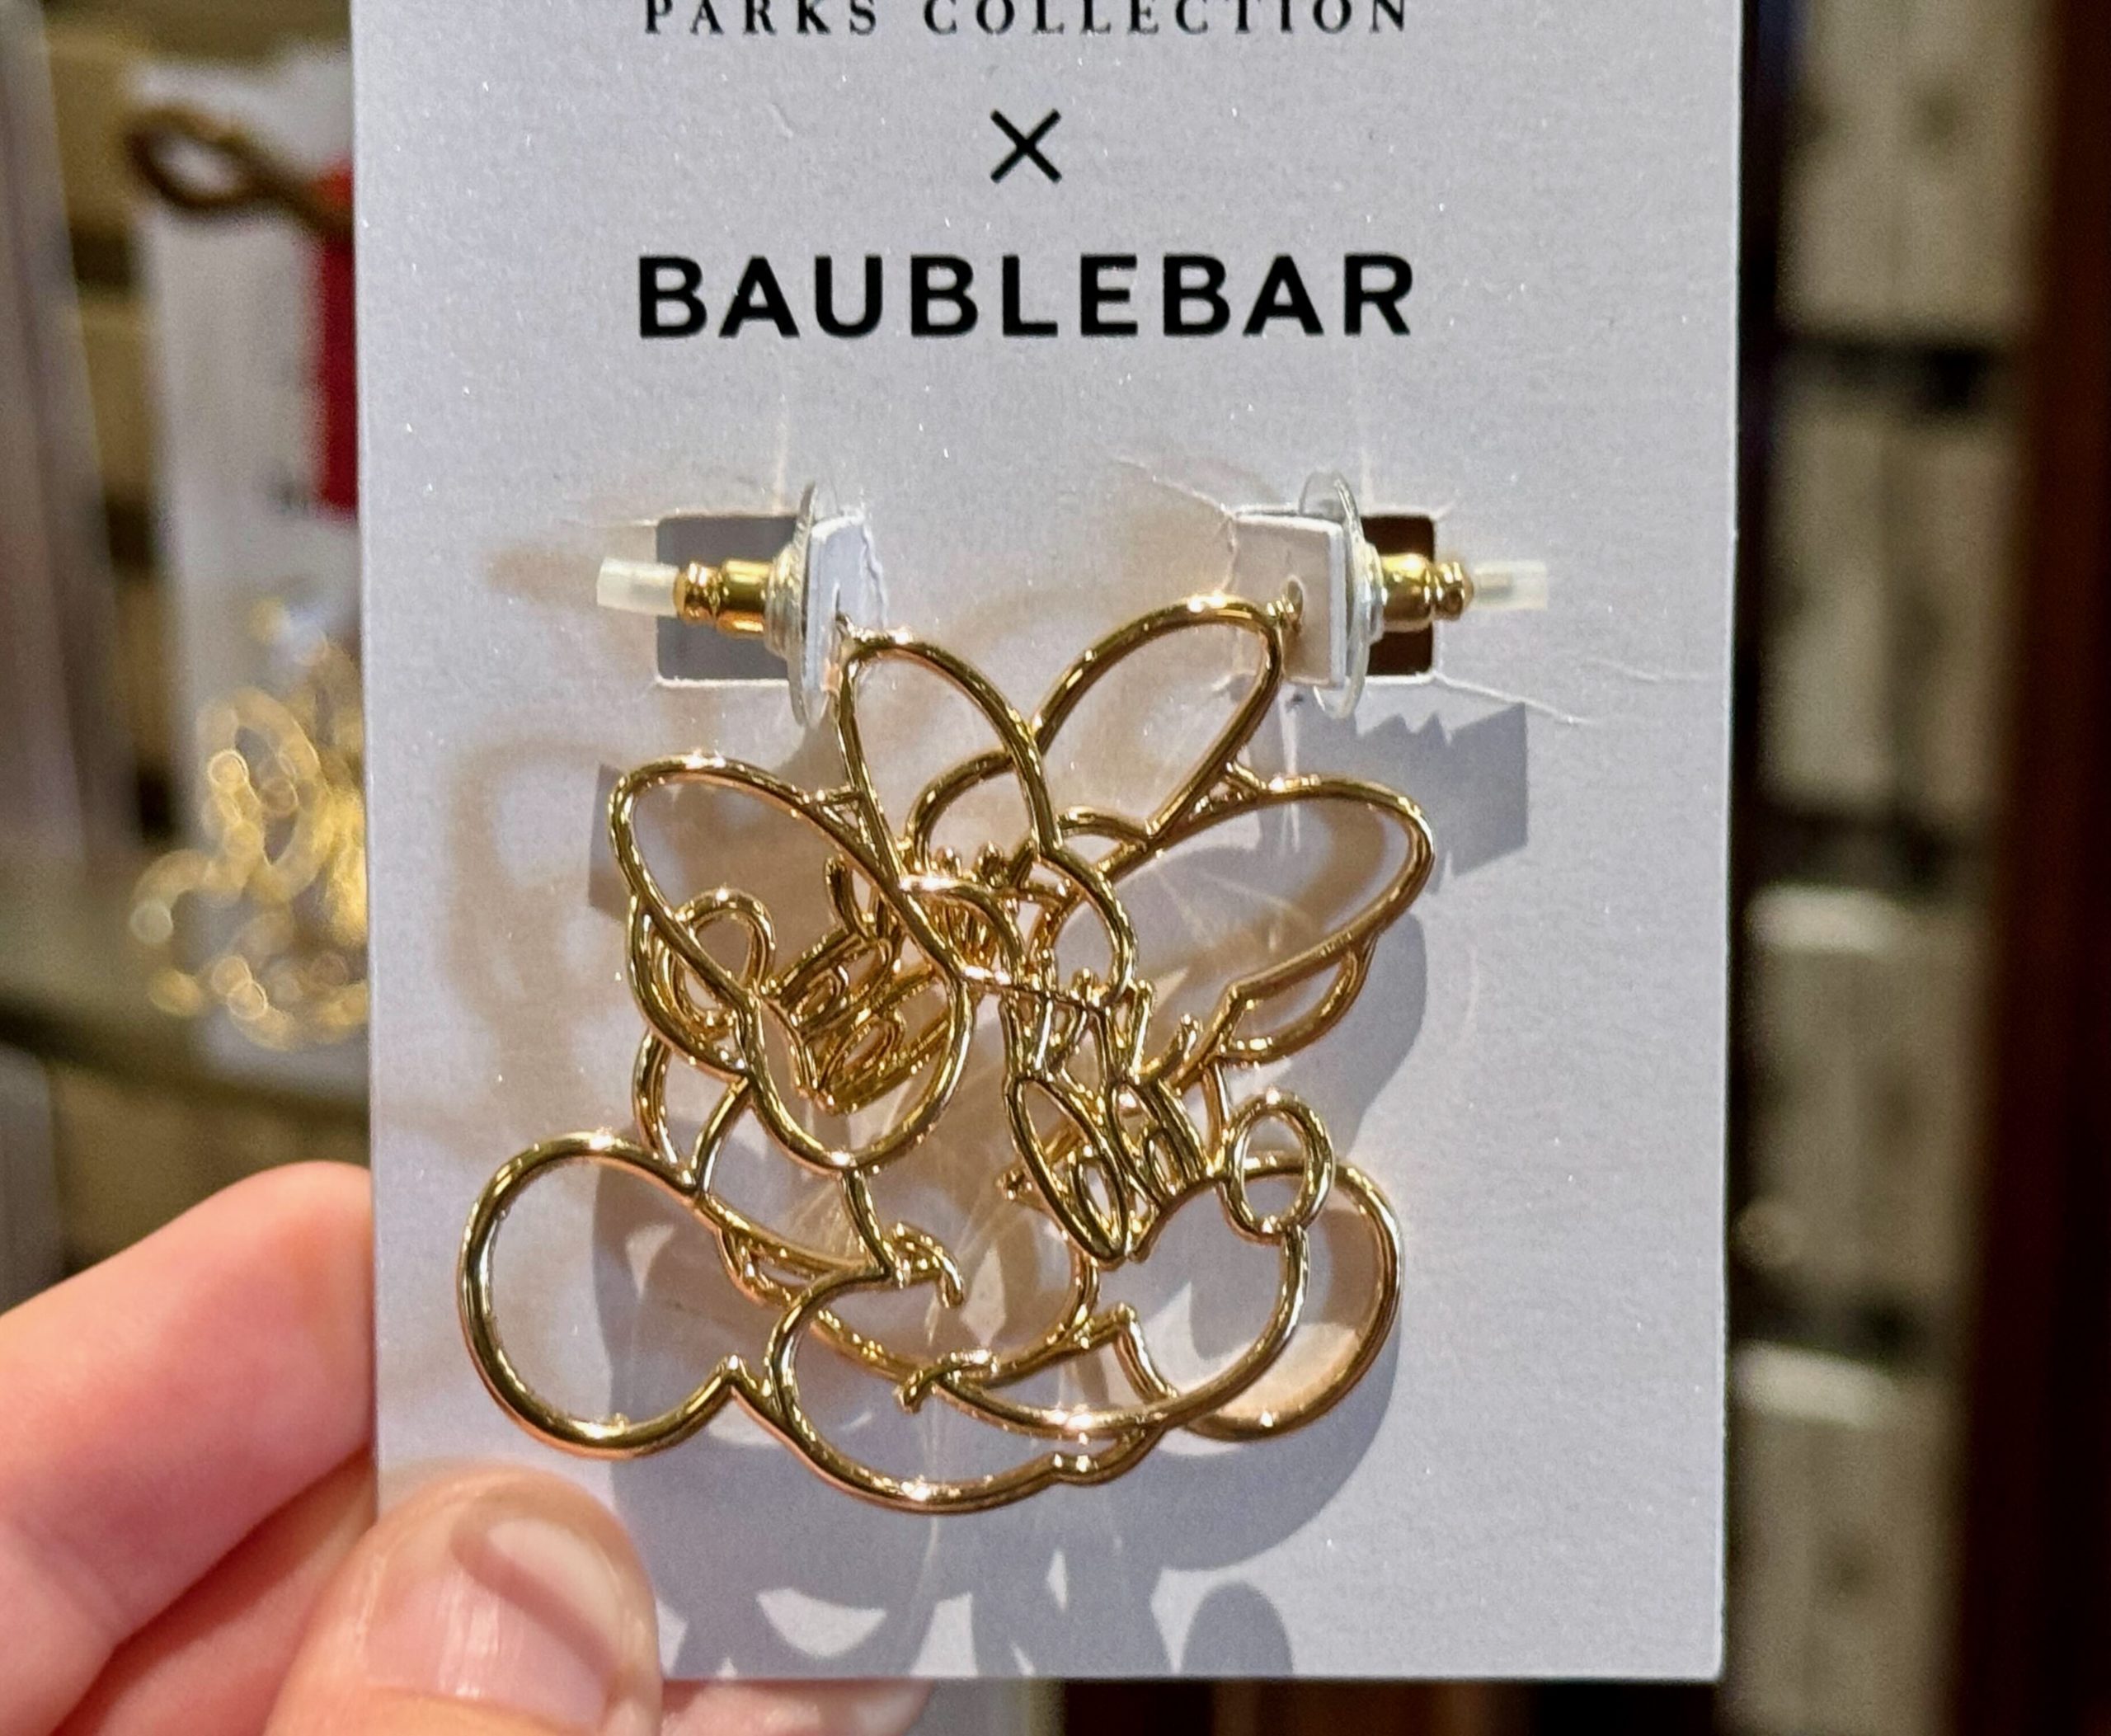 NEW BaubleBar Earrings Showcase Classic Disney Style in Magic Kingdom ...